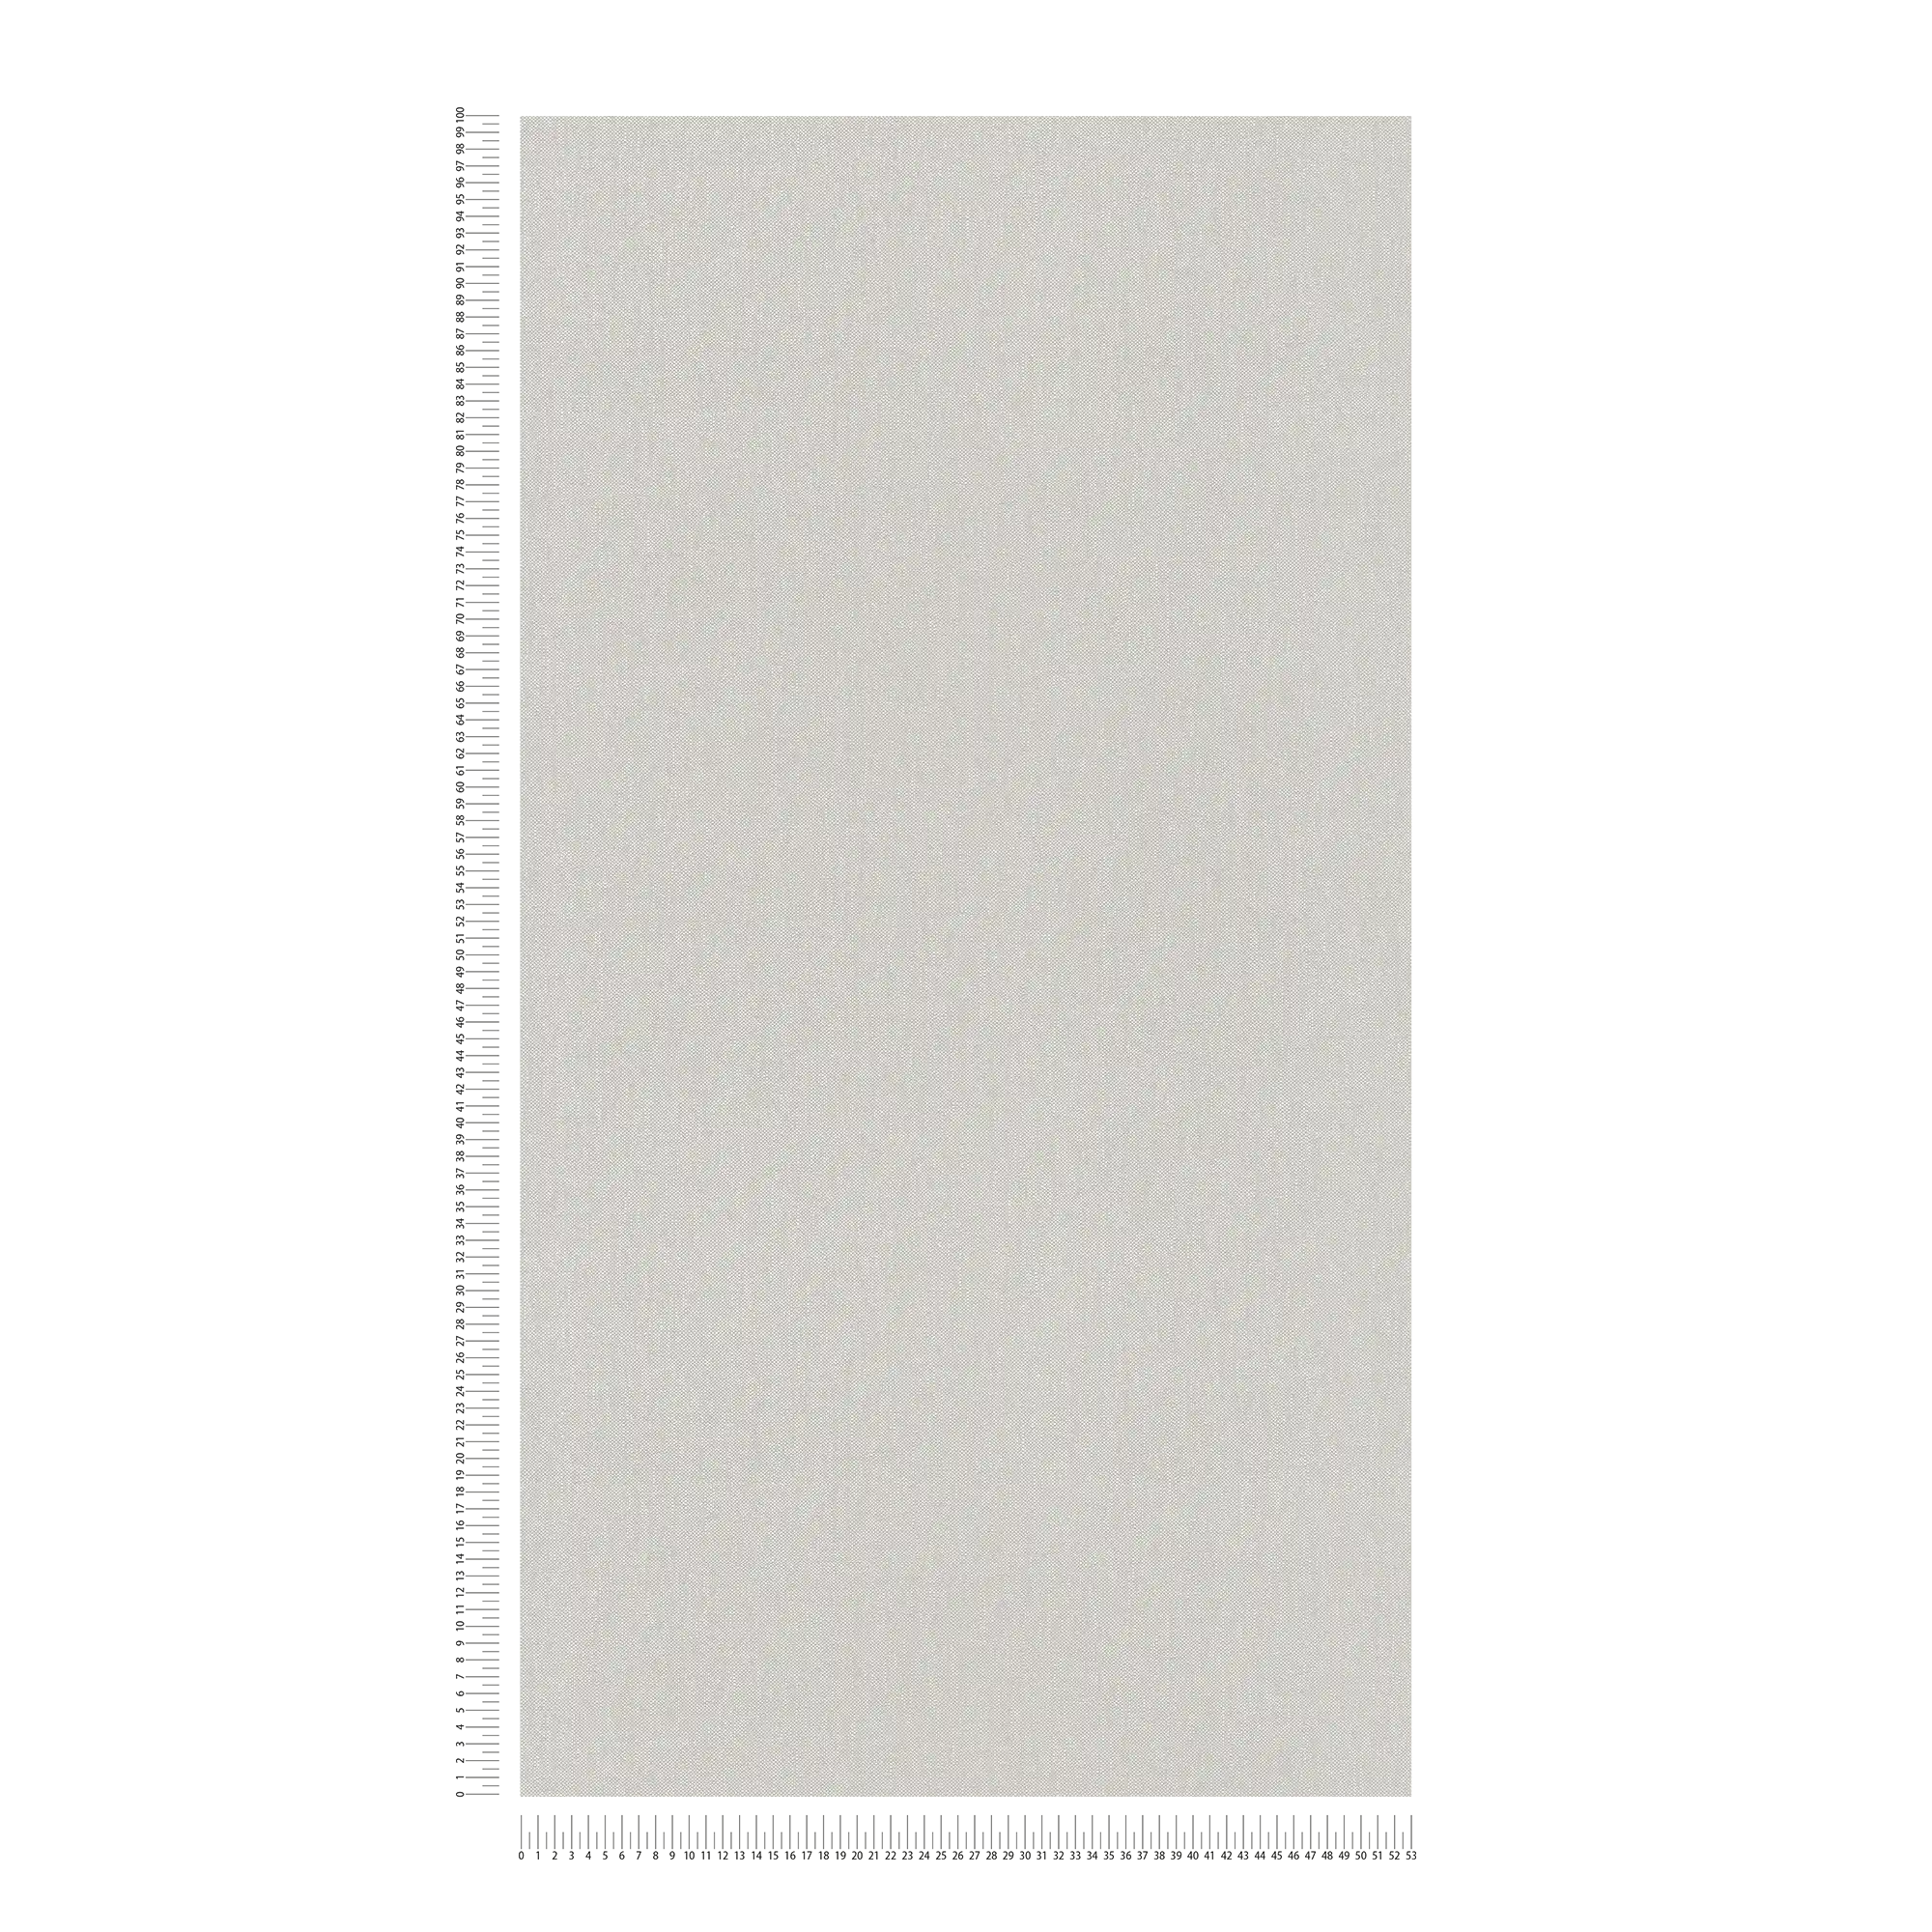             Papier peint aspect lin Beige avec motif textile texturé
        